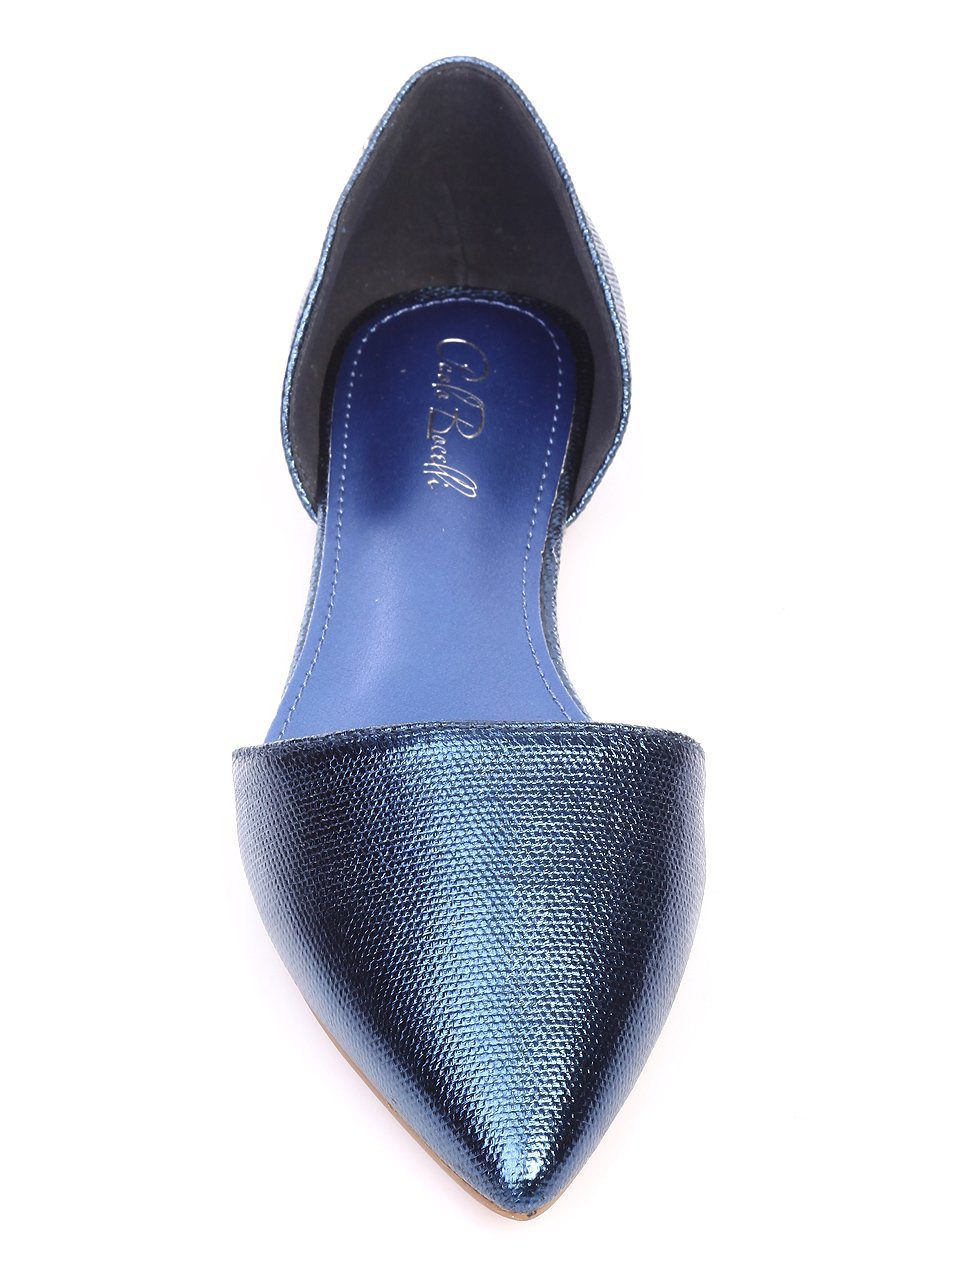 Ежедневни дамски обувки в синьо 3G-17260 blue